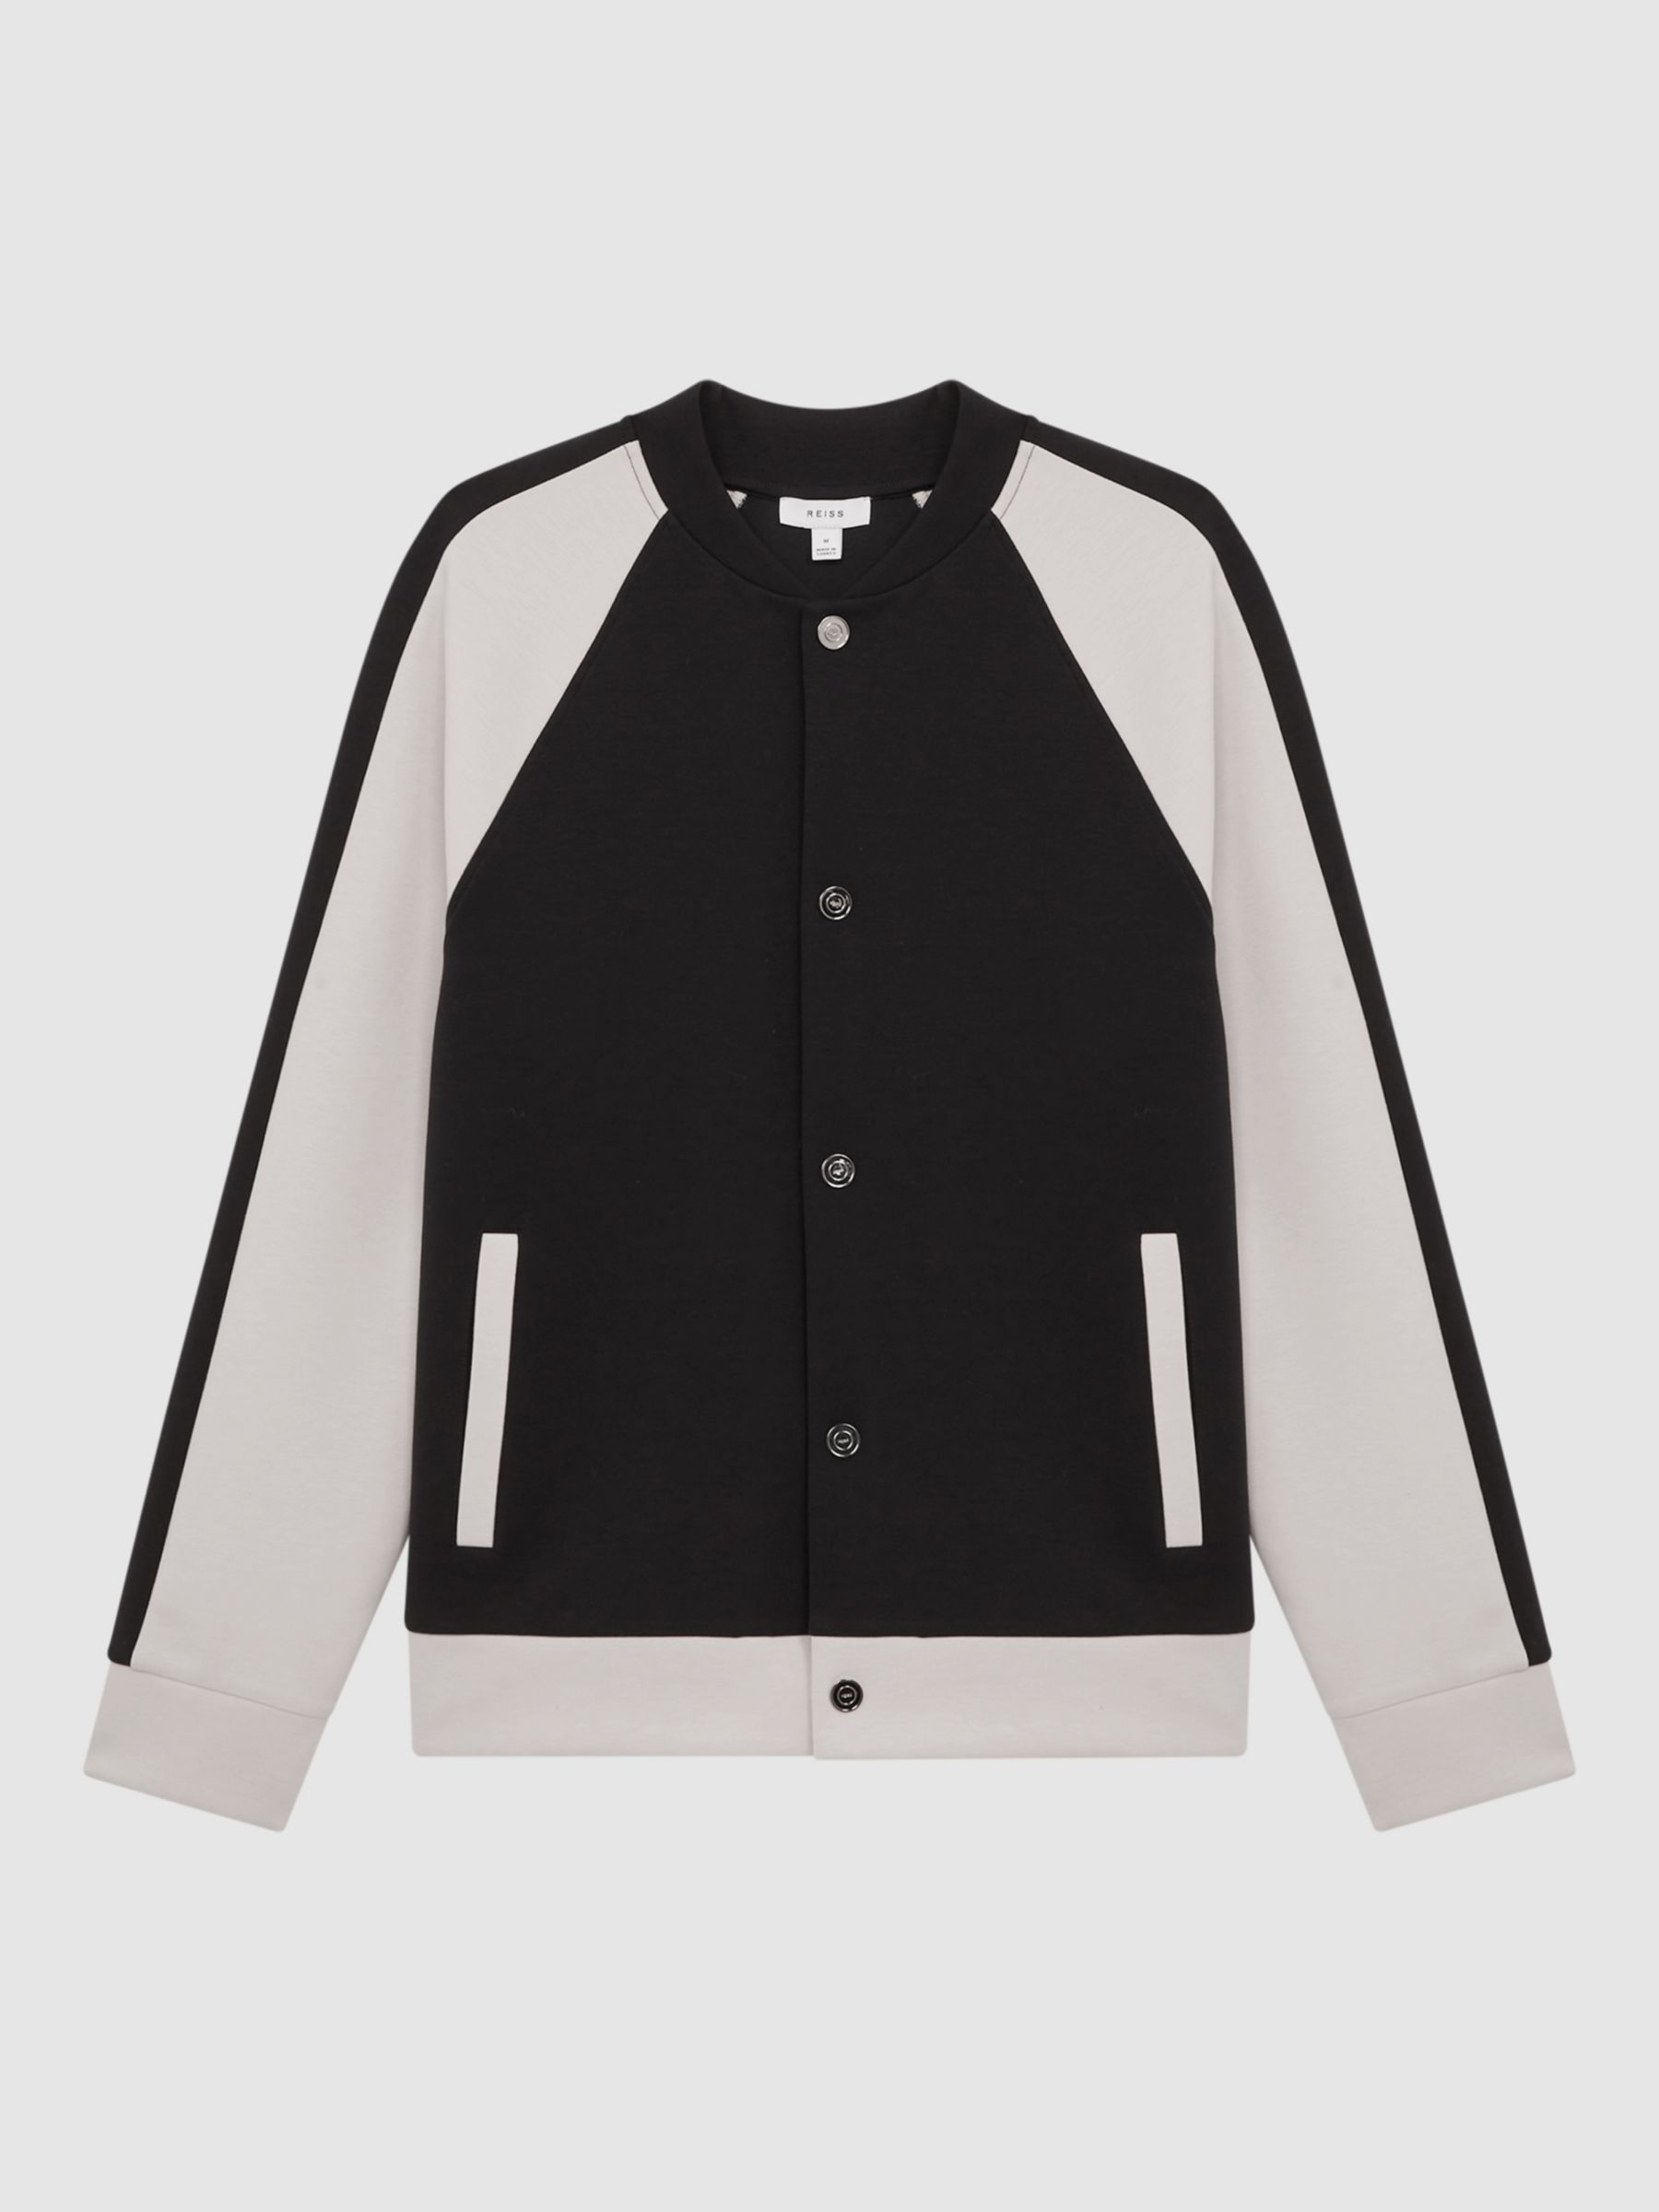 Reiss Giles Long Sleeve Interlock Colour Jersey Top, Navy/Ecru